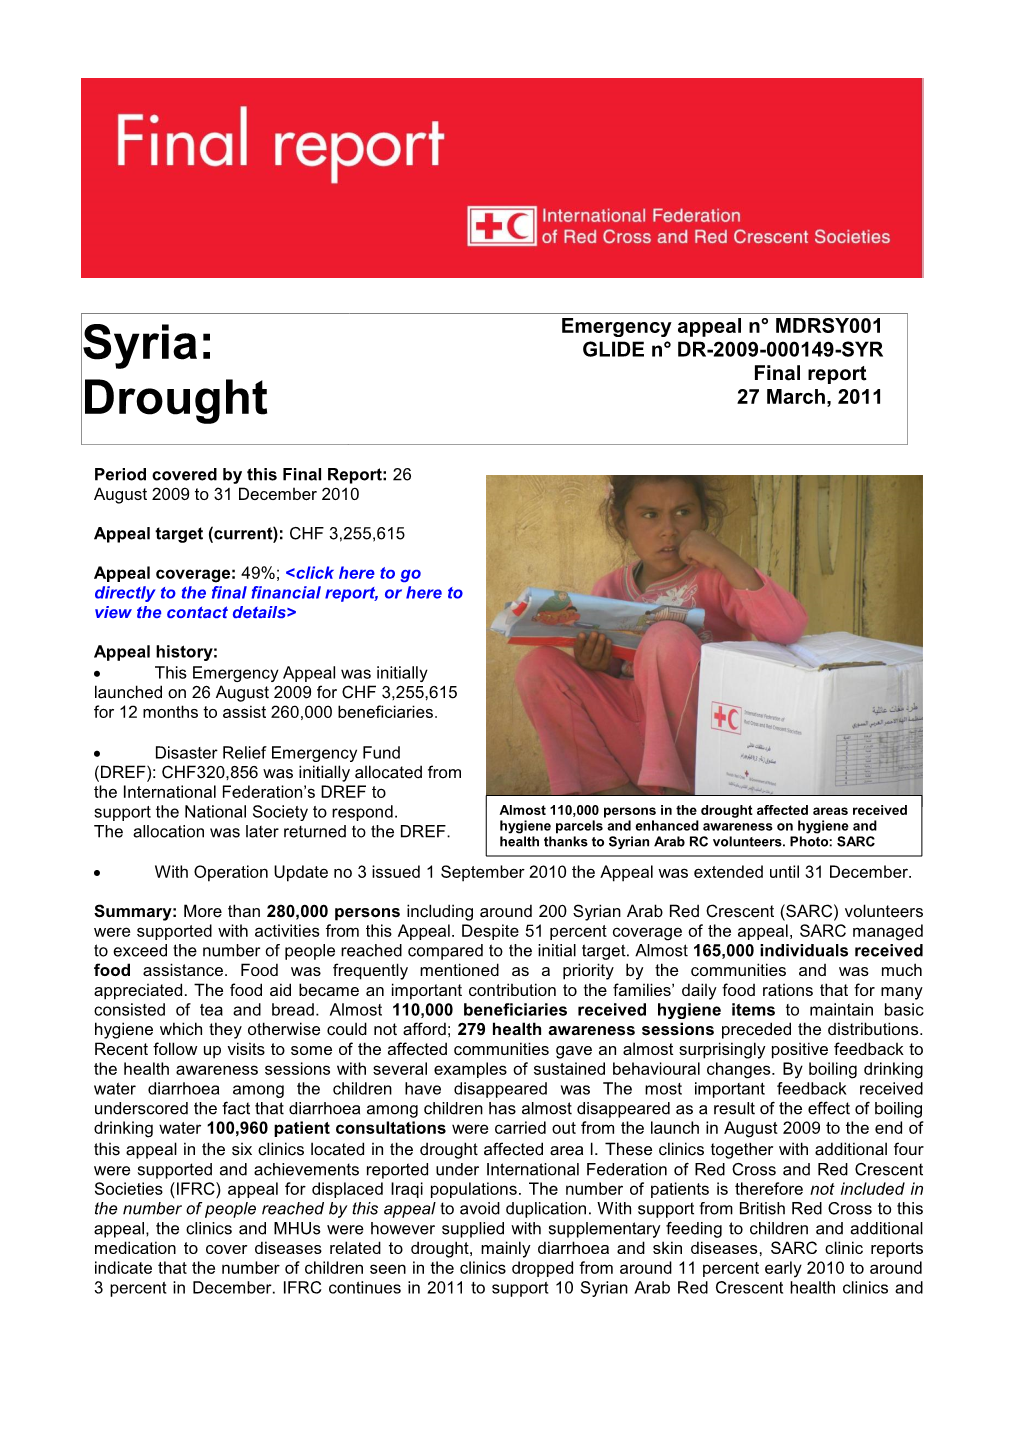 Syria: Drought